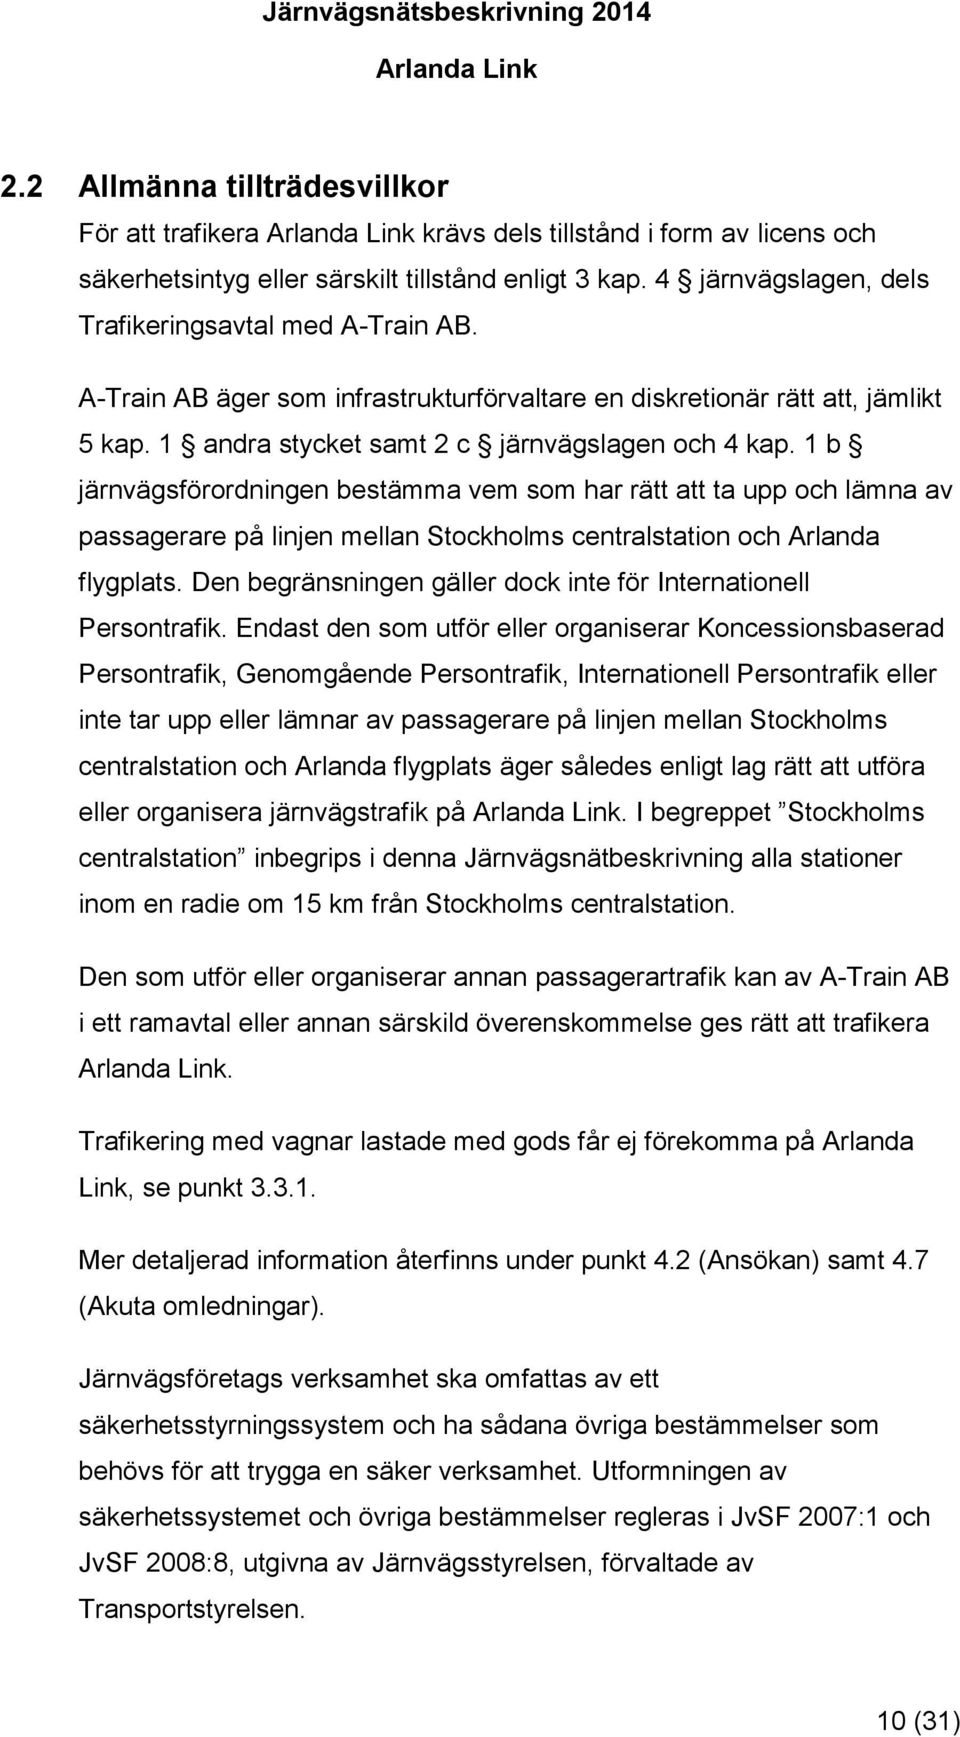 1 b järnvägsförordningen bestämma vem som har rätt att ta upp och lämna av passagerare på linjen mellan Stockholms centralstation och Arlanda flygplats.